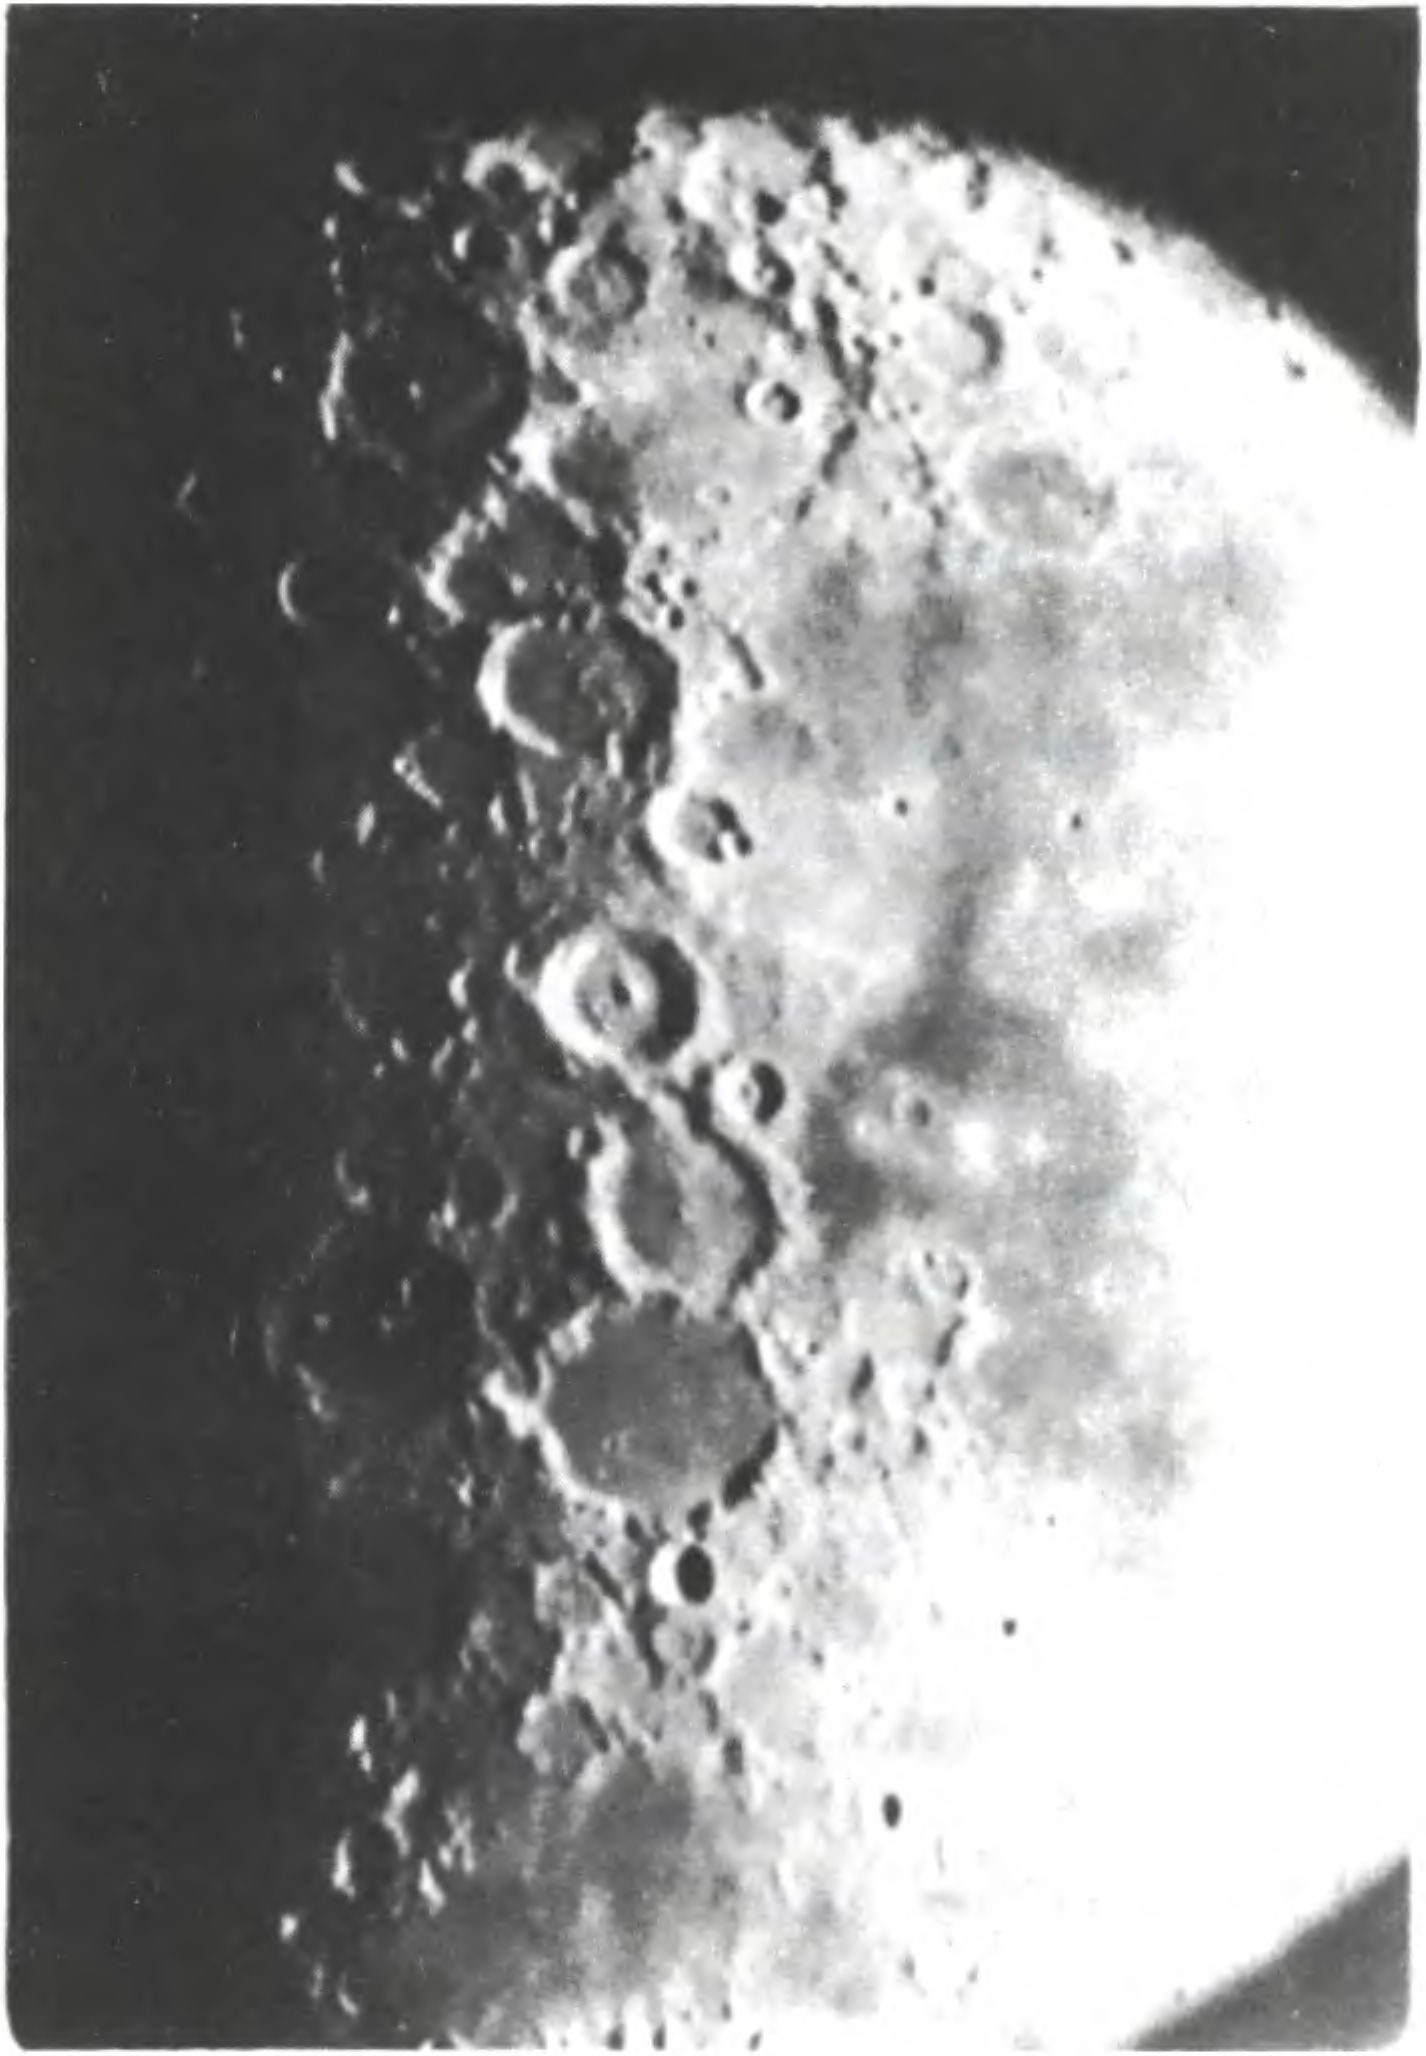 Фотография Луны, сделанная с помощью любительского телескопа А. Фомина